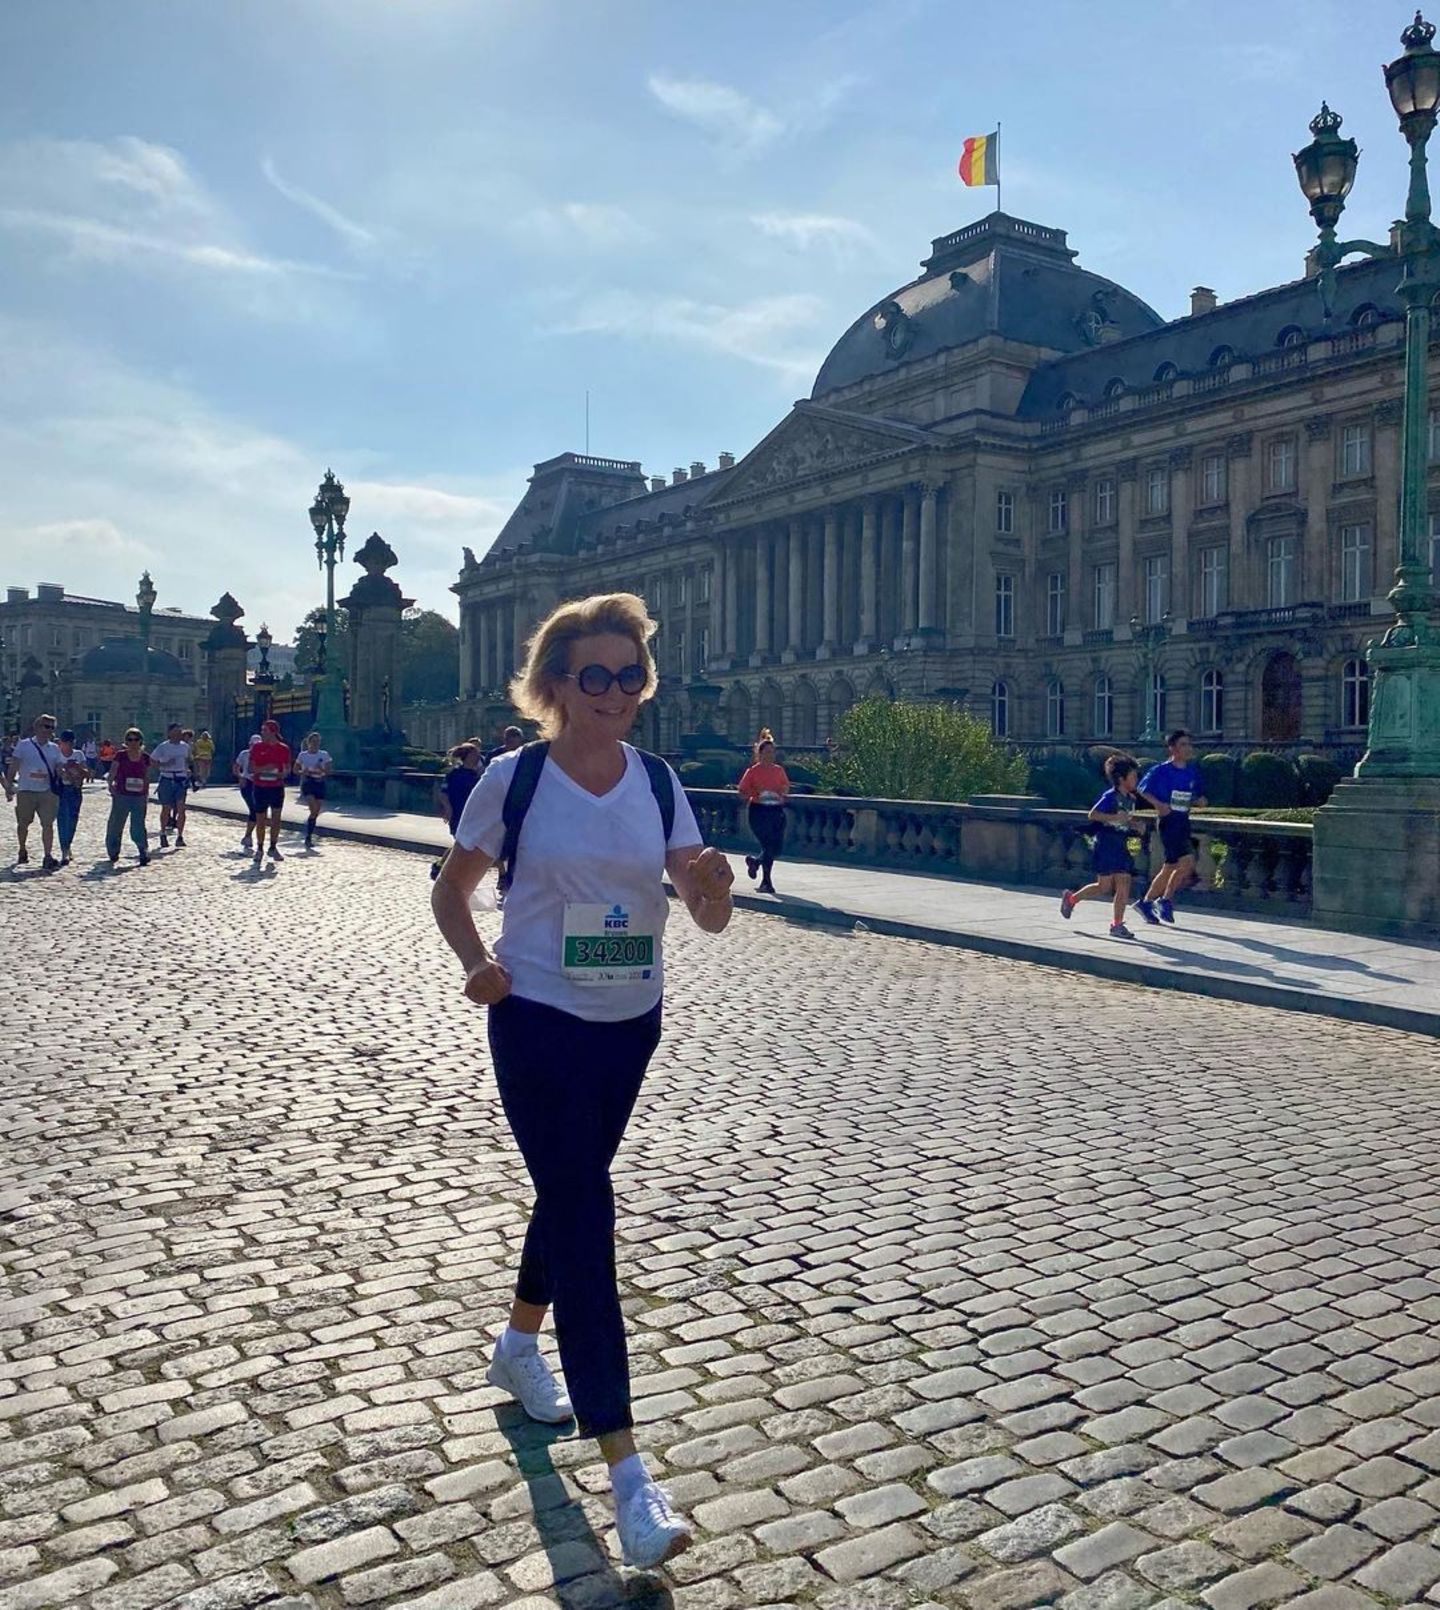 12. September 2021  Zum 41. Mal findet der beliebte Lauf "20 Kilometer von Brüssel" statt, und in diesem Jahr darf auch erstmals mitgewandert werden. Genau das macht nämlich auch Königin Mathilde, von der dieses schöne Bild bei bestem Wetter direkt vor dem Palast aufgenommen wurde.